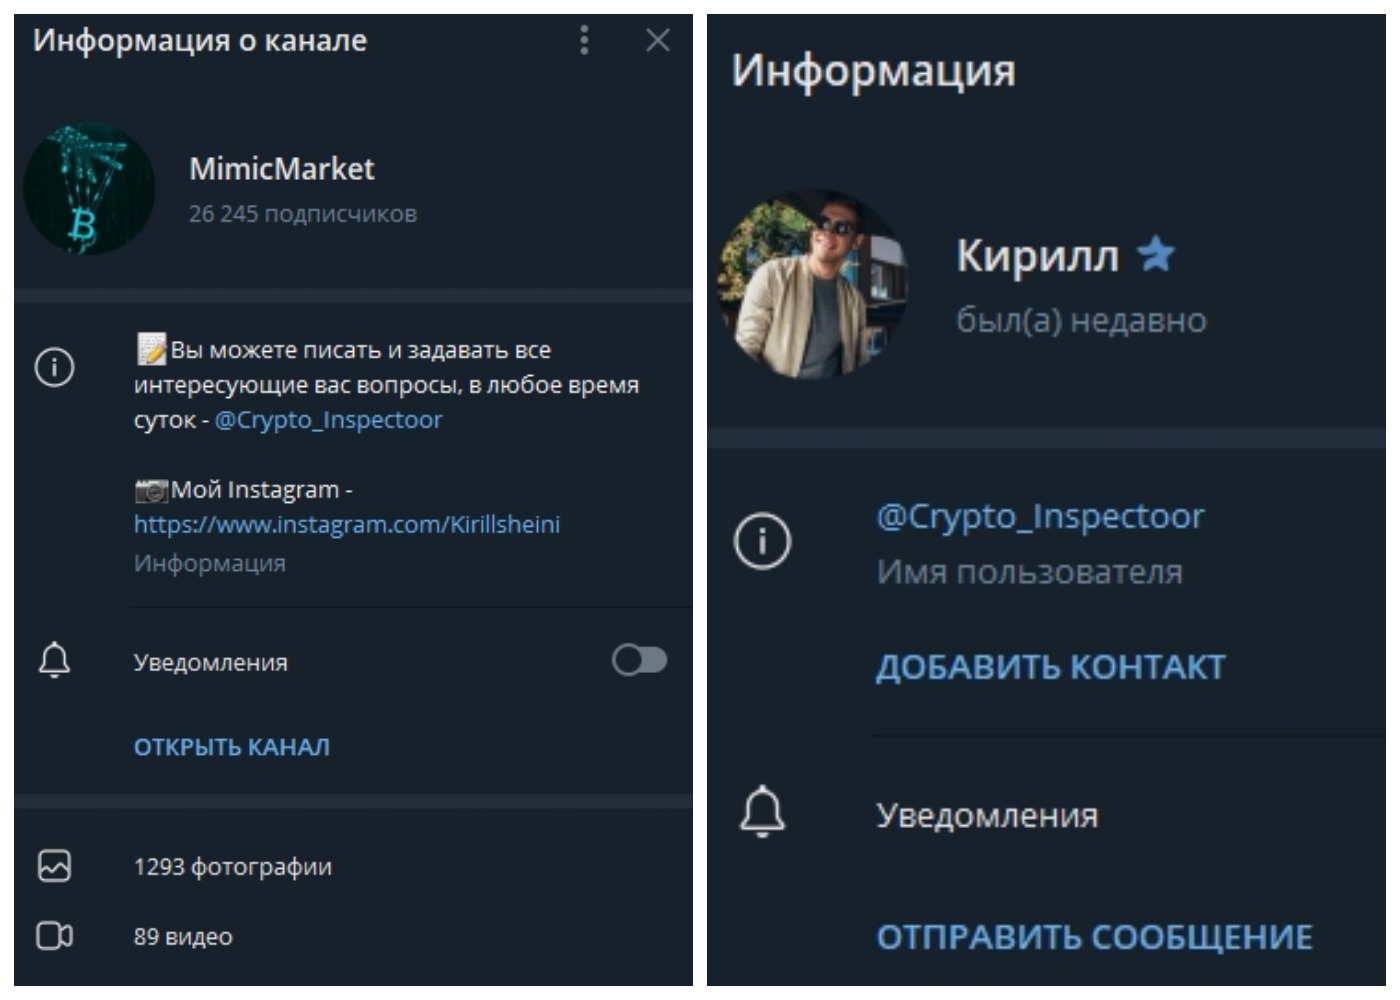 Действующие профиль и канал @Kirill_Consalting 